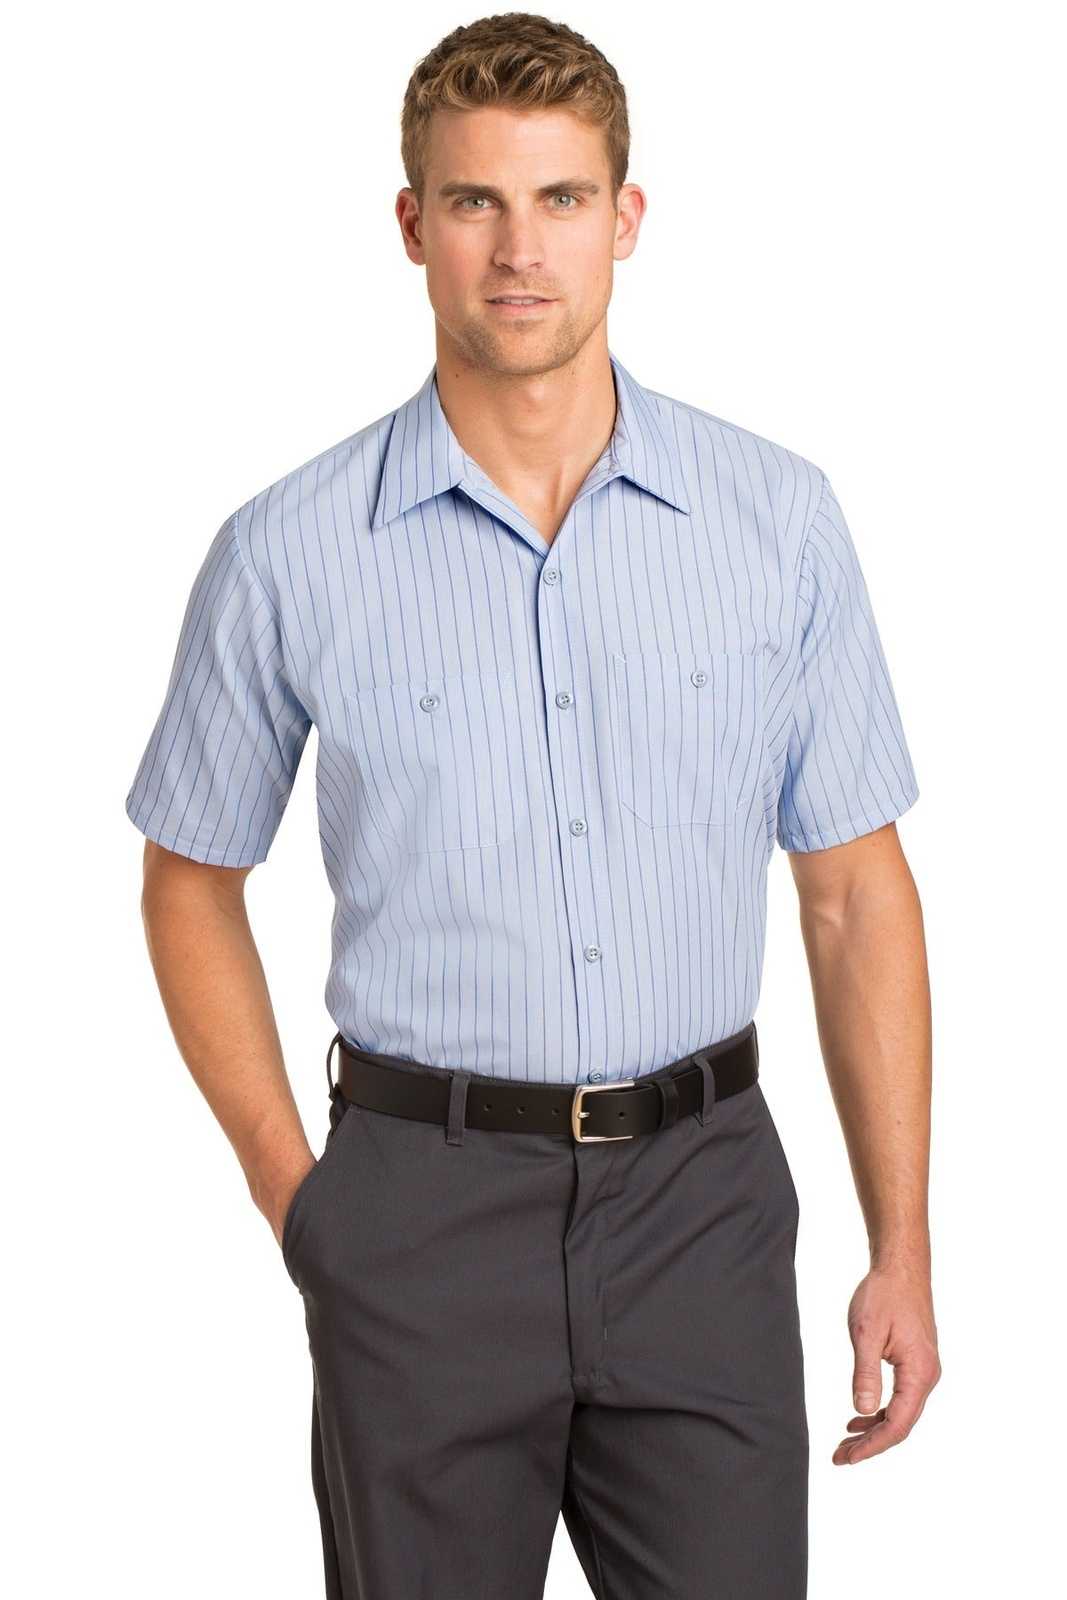 Red Kap CS20 Short Sleeve Striped Industrial Work Shirt - Light Blue/ Navy - HIT a Double - 1